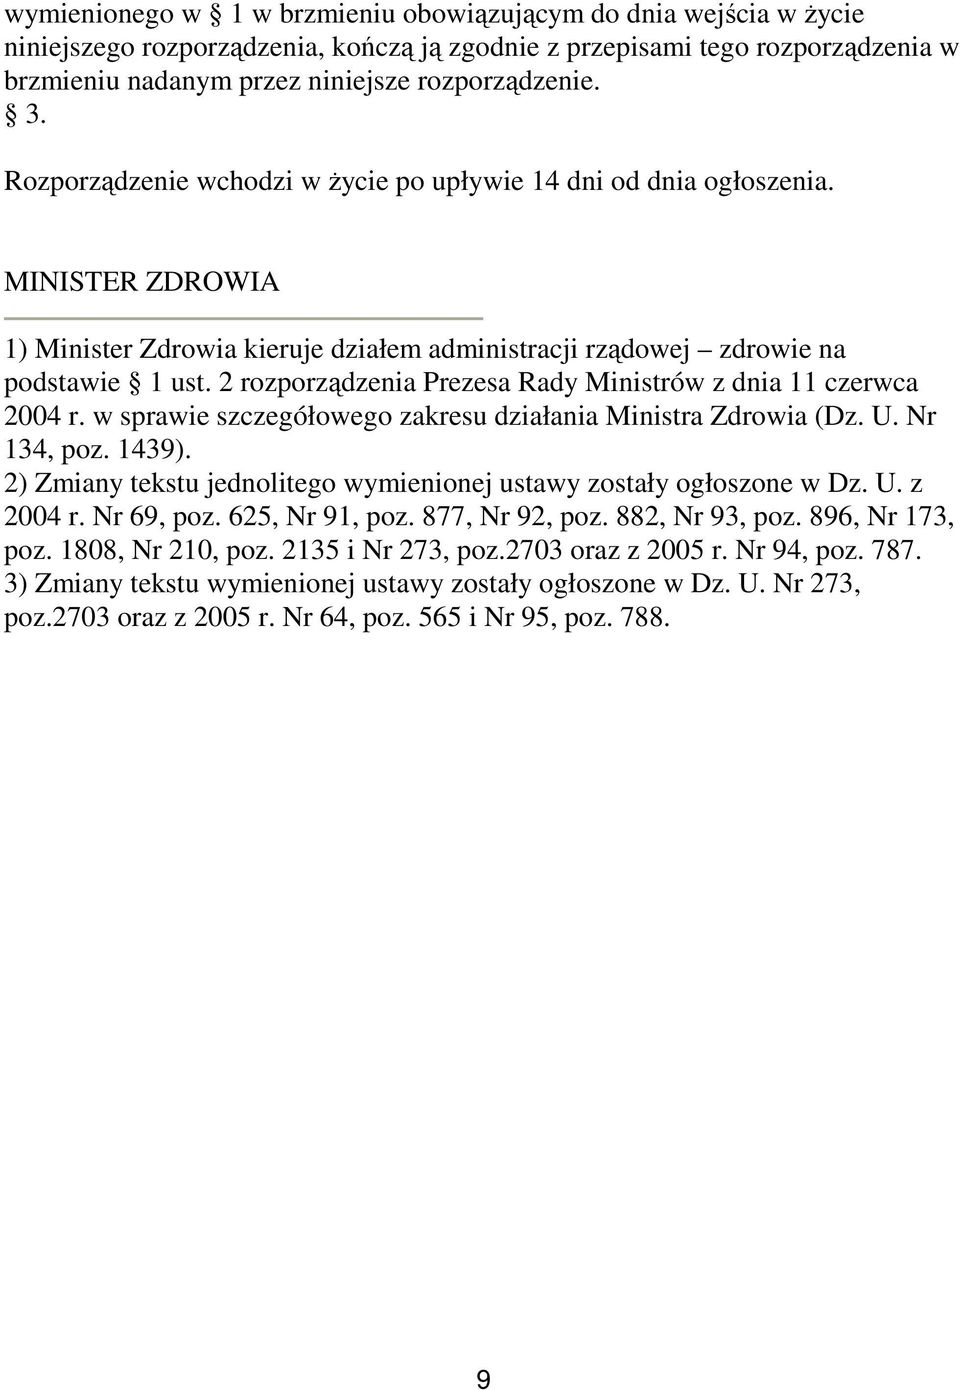 2 rozporządzenia Prezesa Rady Ministrów z dnia 11 czerwca 2004 r. w sprawie szczegółowego zakresu działania Ministra Zdrowia (Dz. U. Nr 134, poz. 1439).